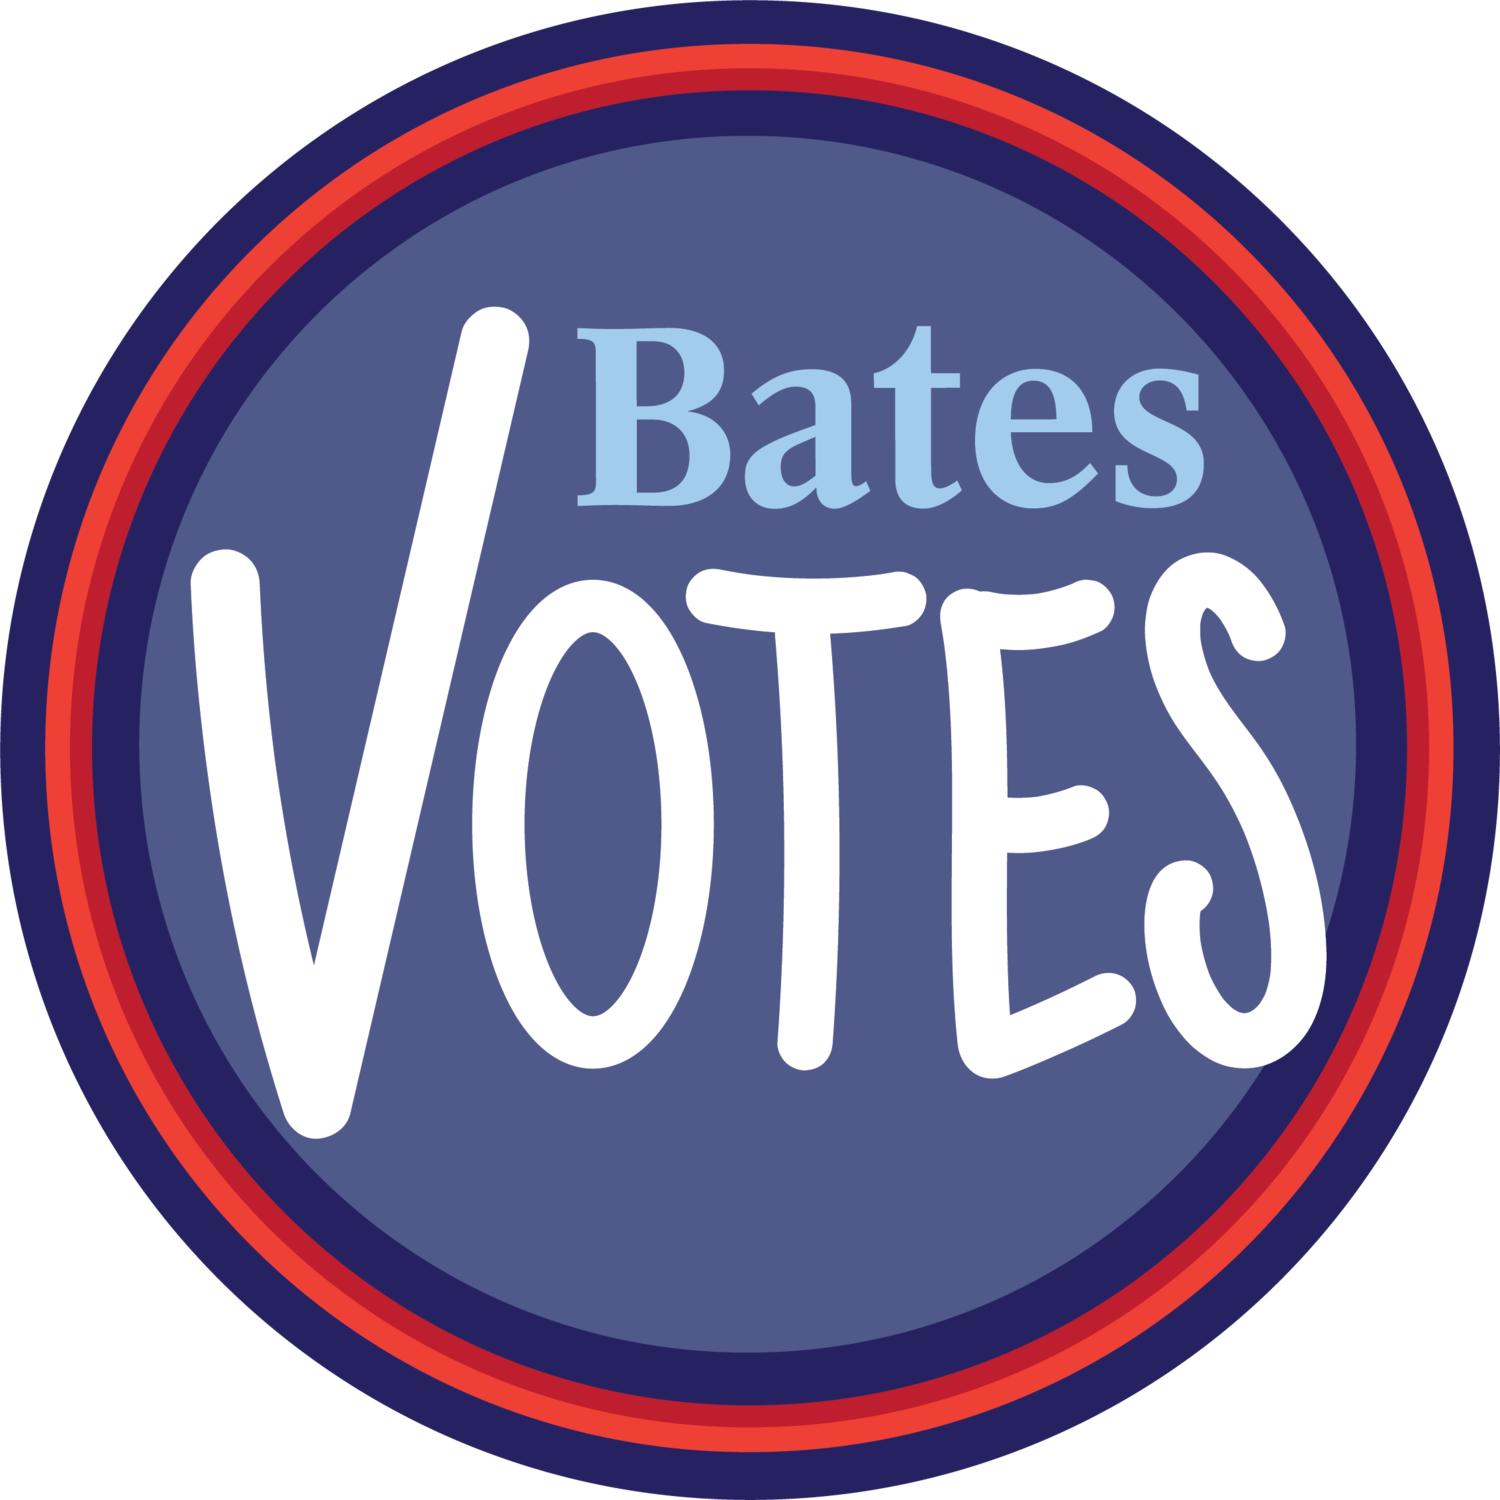 Bates Votes